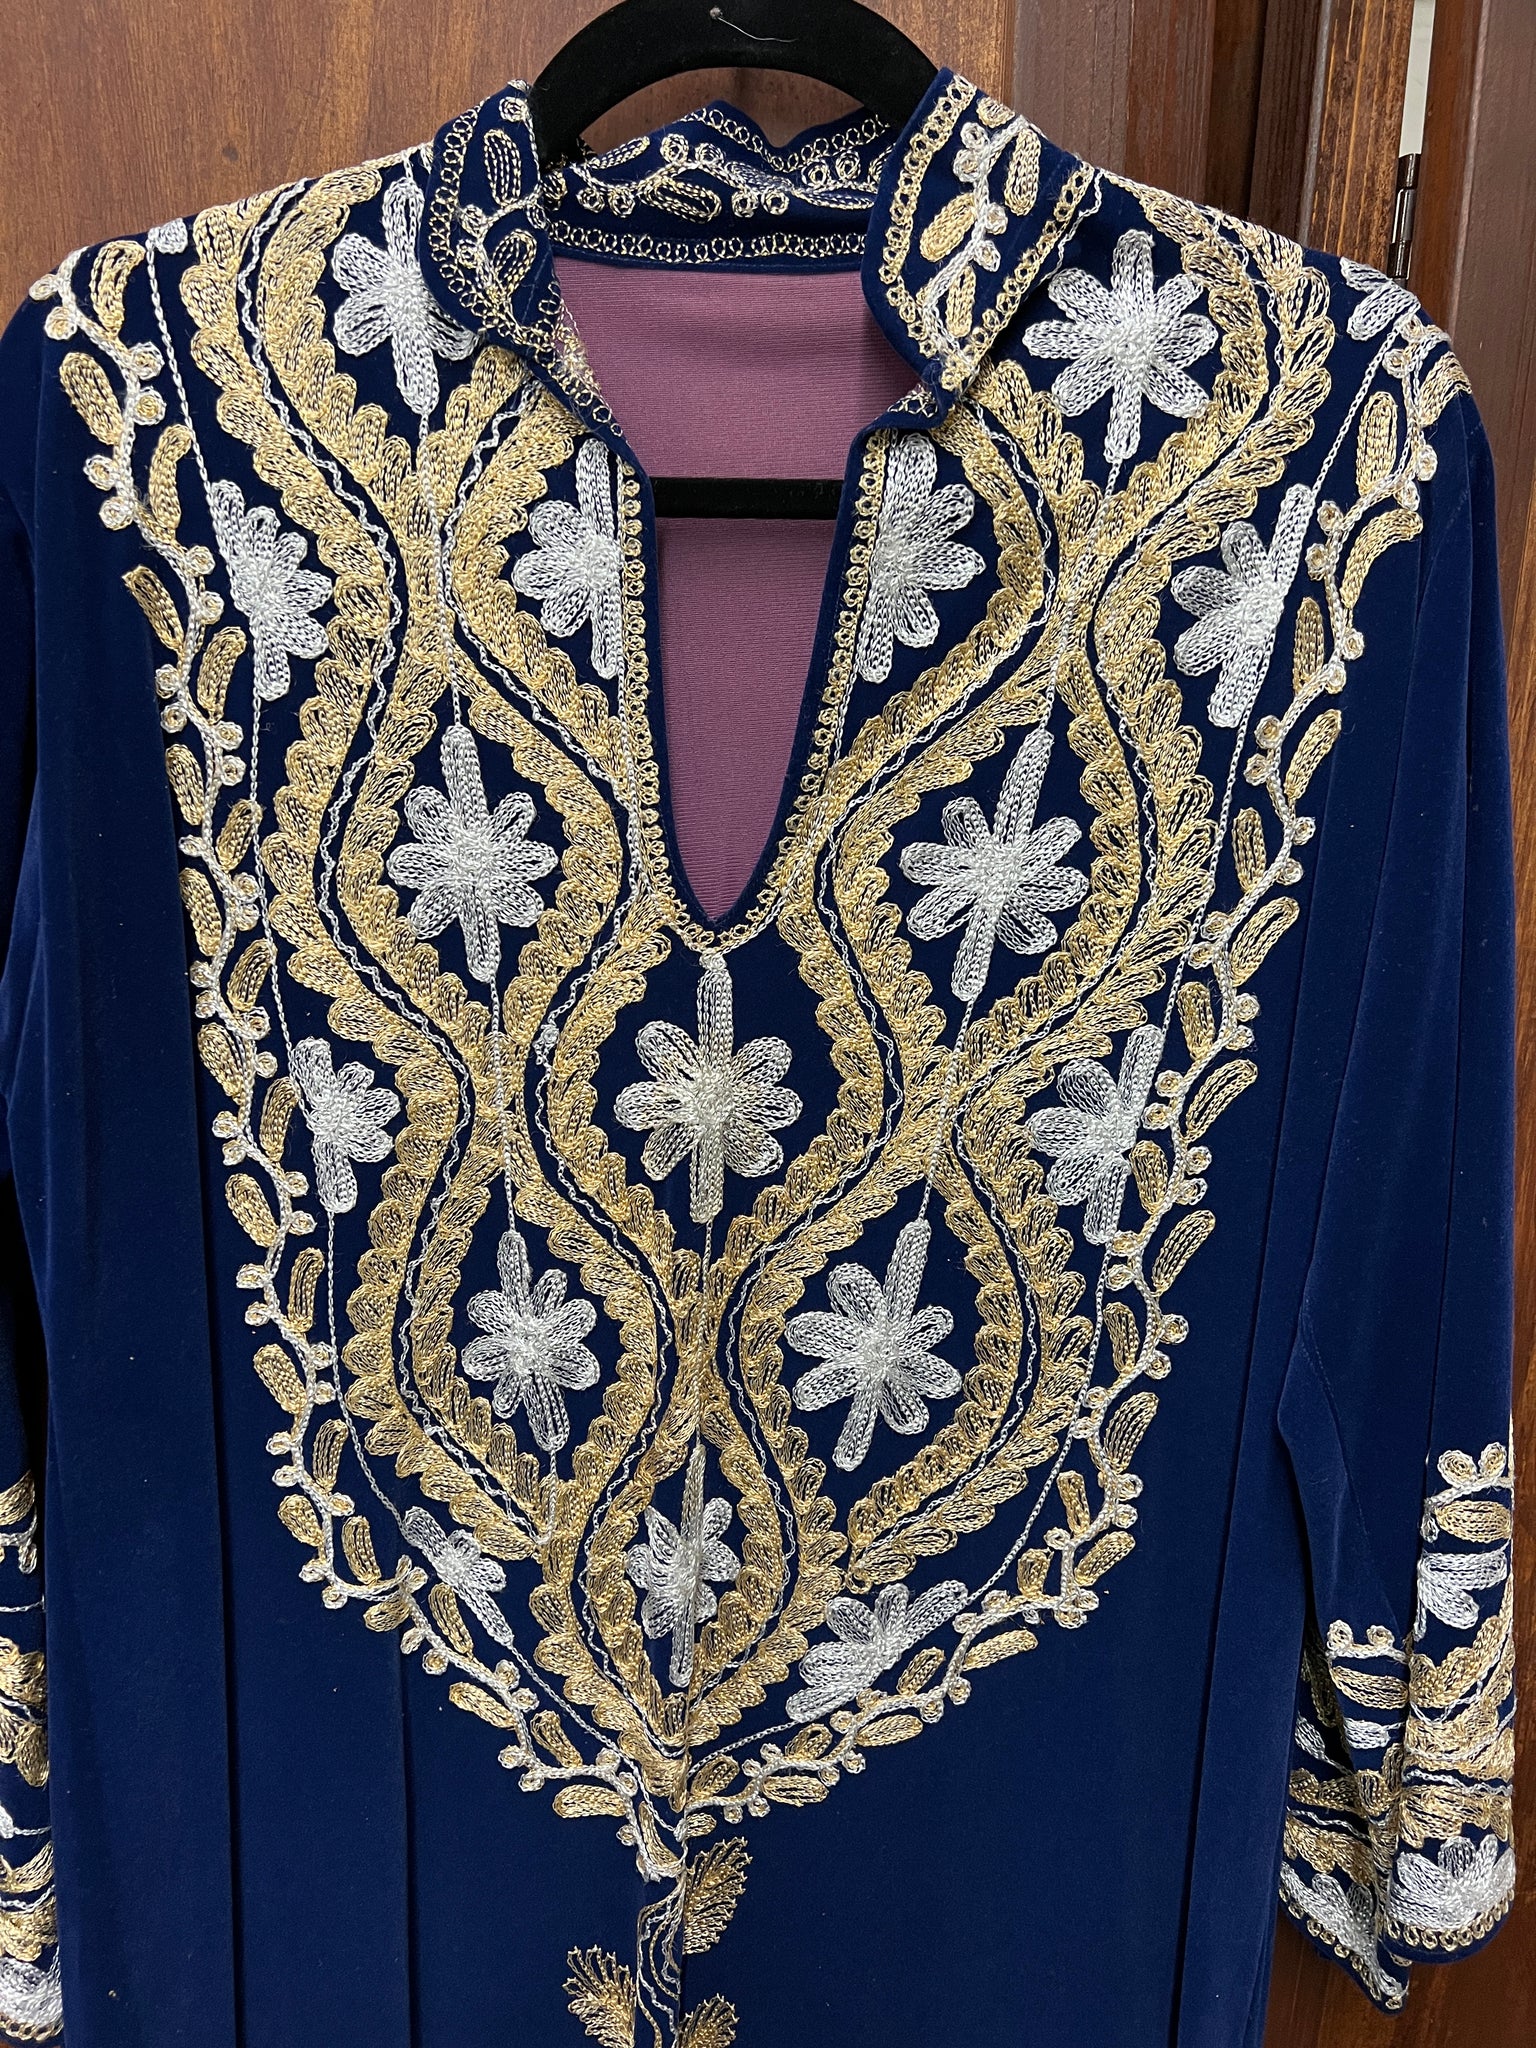 RENTAL 1960S Dress- blue velvet embroidery tunic